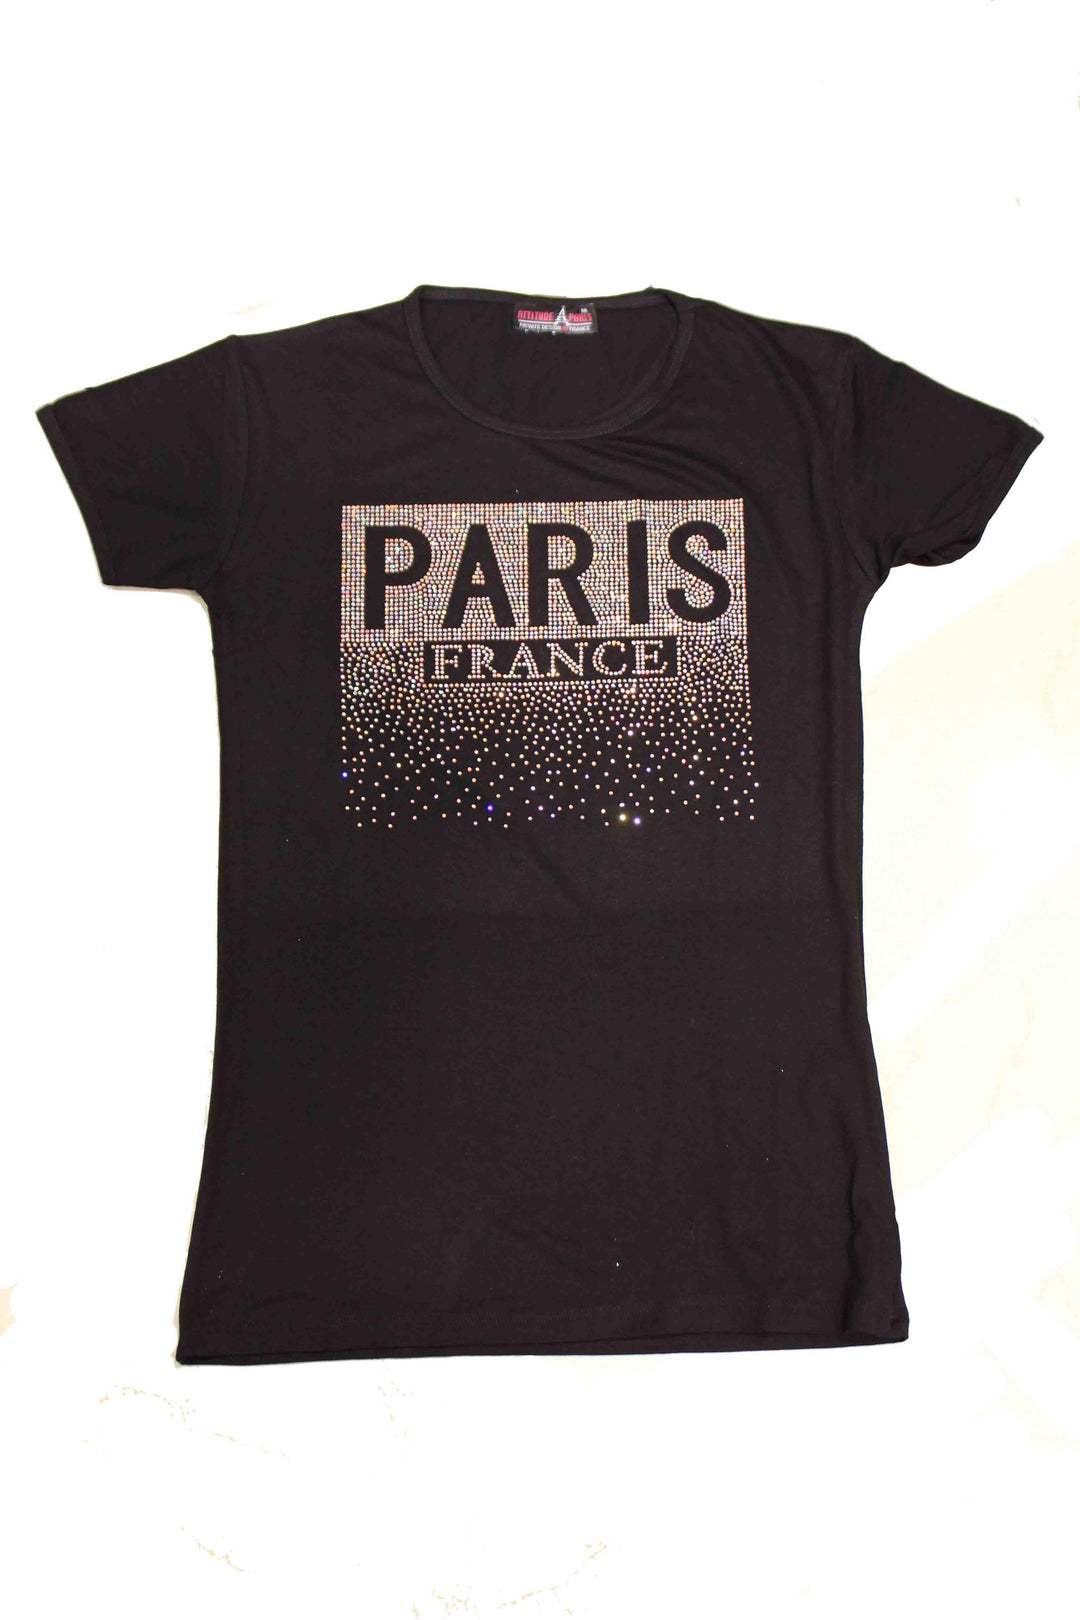 Tee shirt Paris France STRASS 